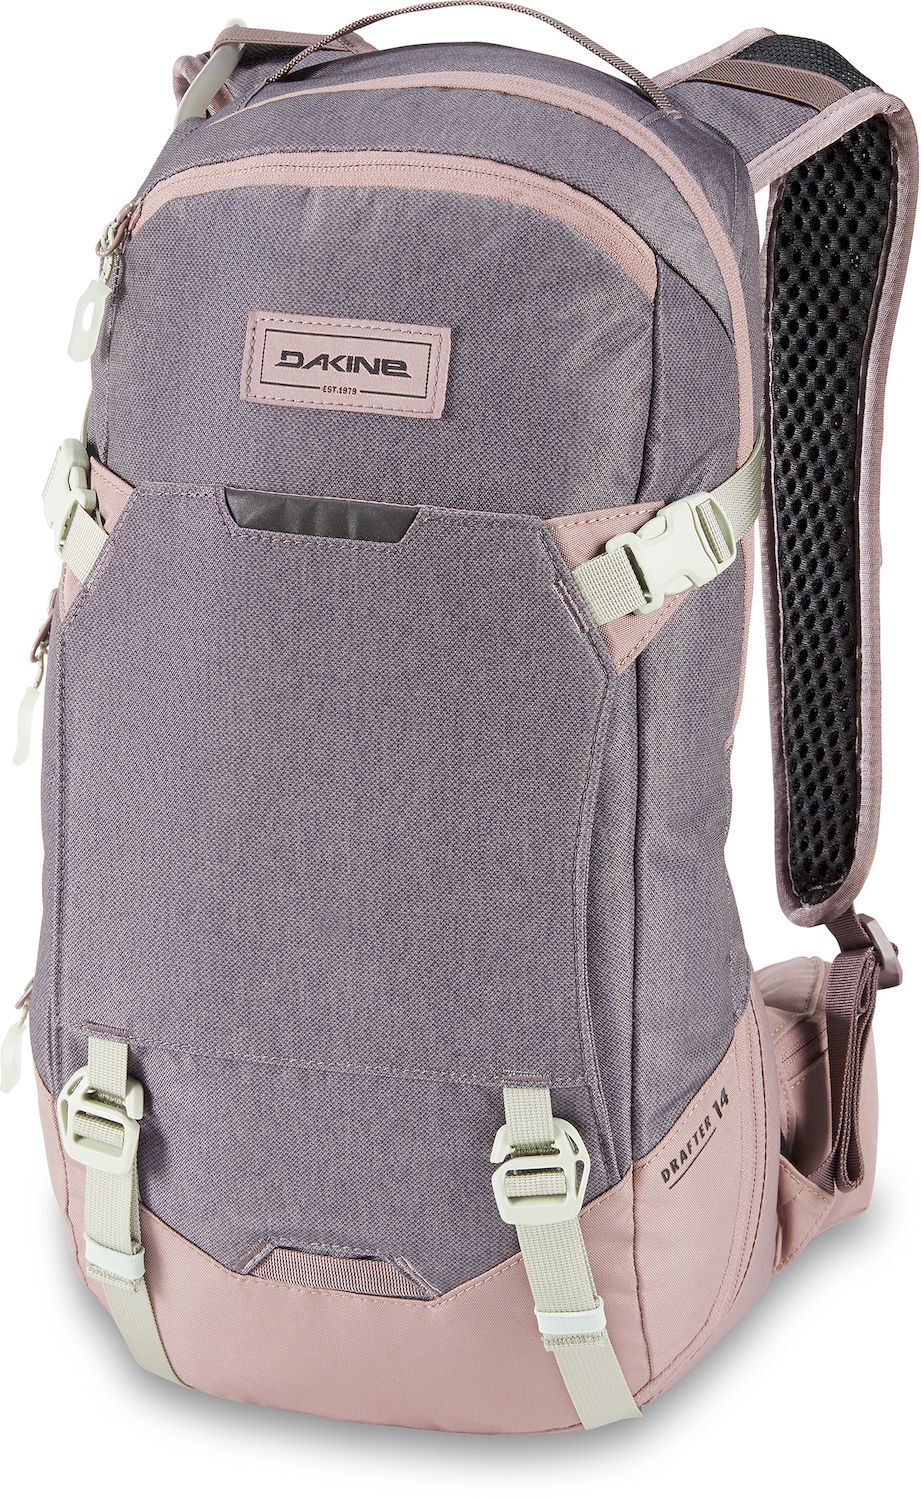 Dakine Drafter 14L - Hydration backpack - Women's